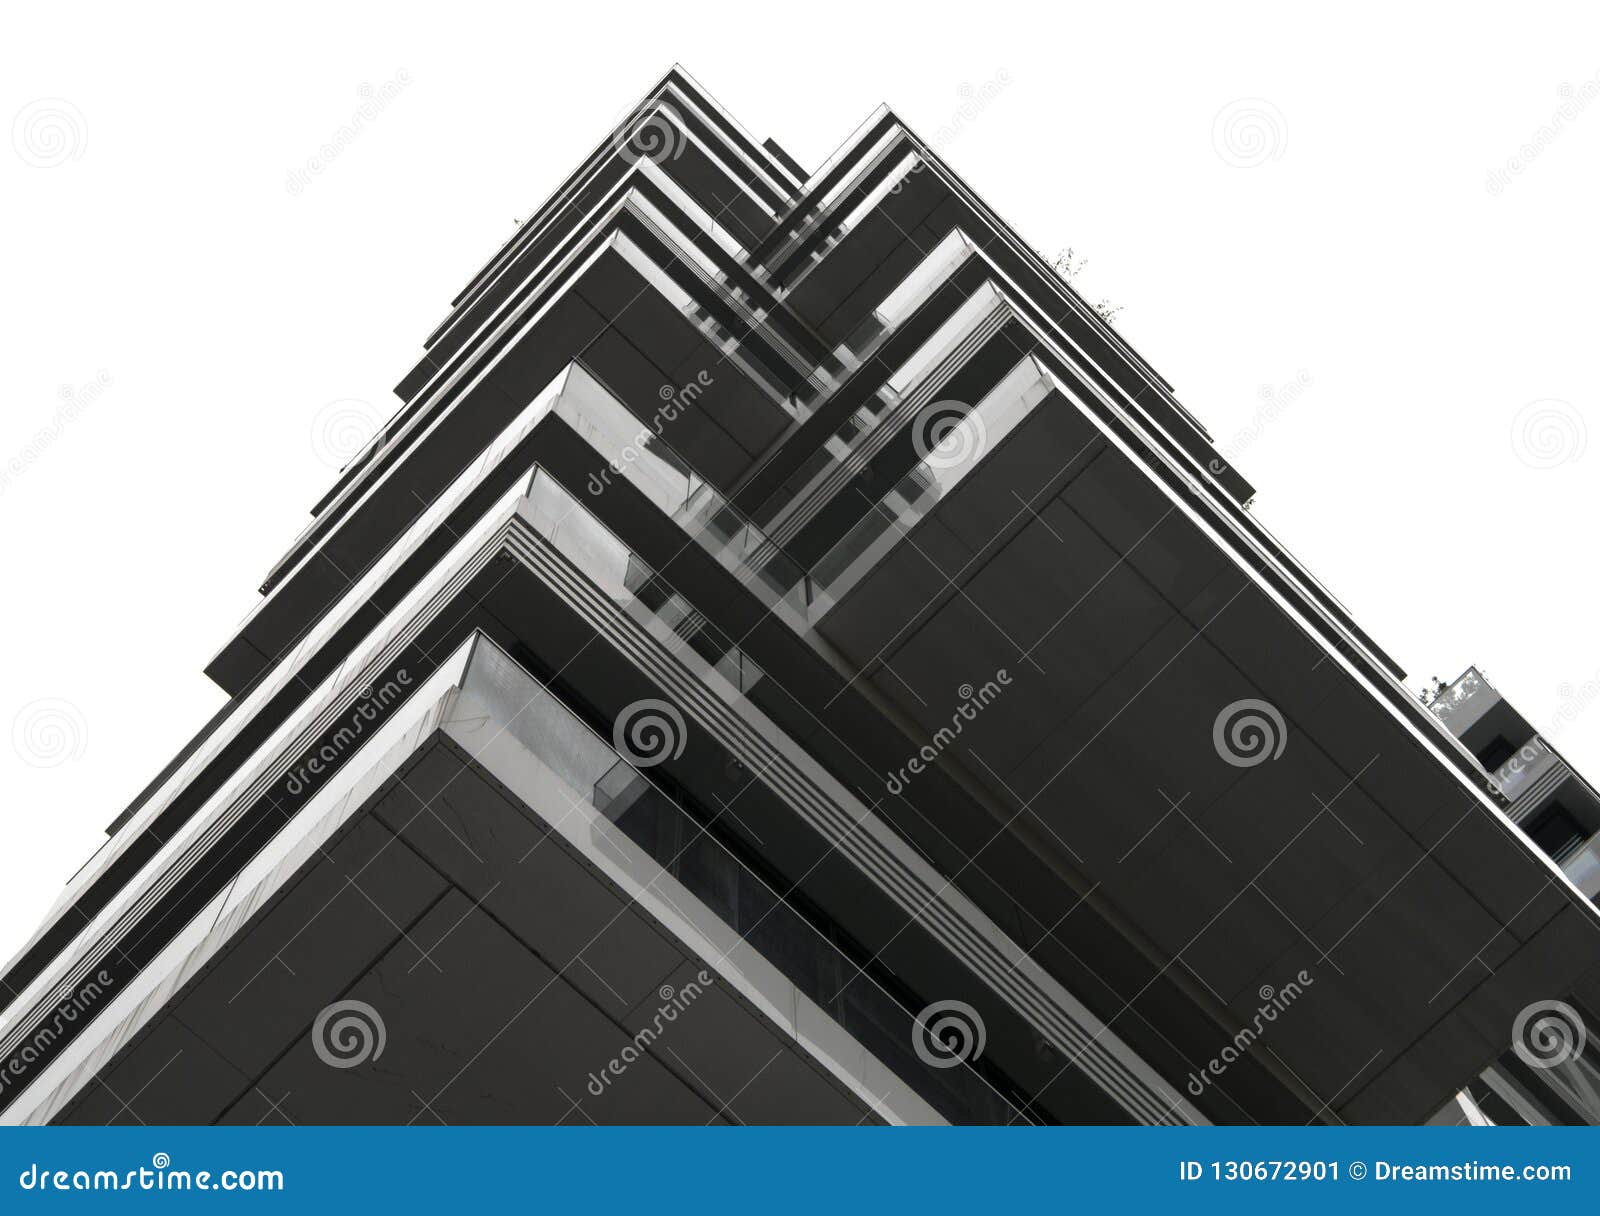 Modelo de la reflexión de un edificio moderno. La reflexión de la forma constructiva un modelo abstracto interesante